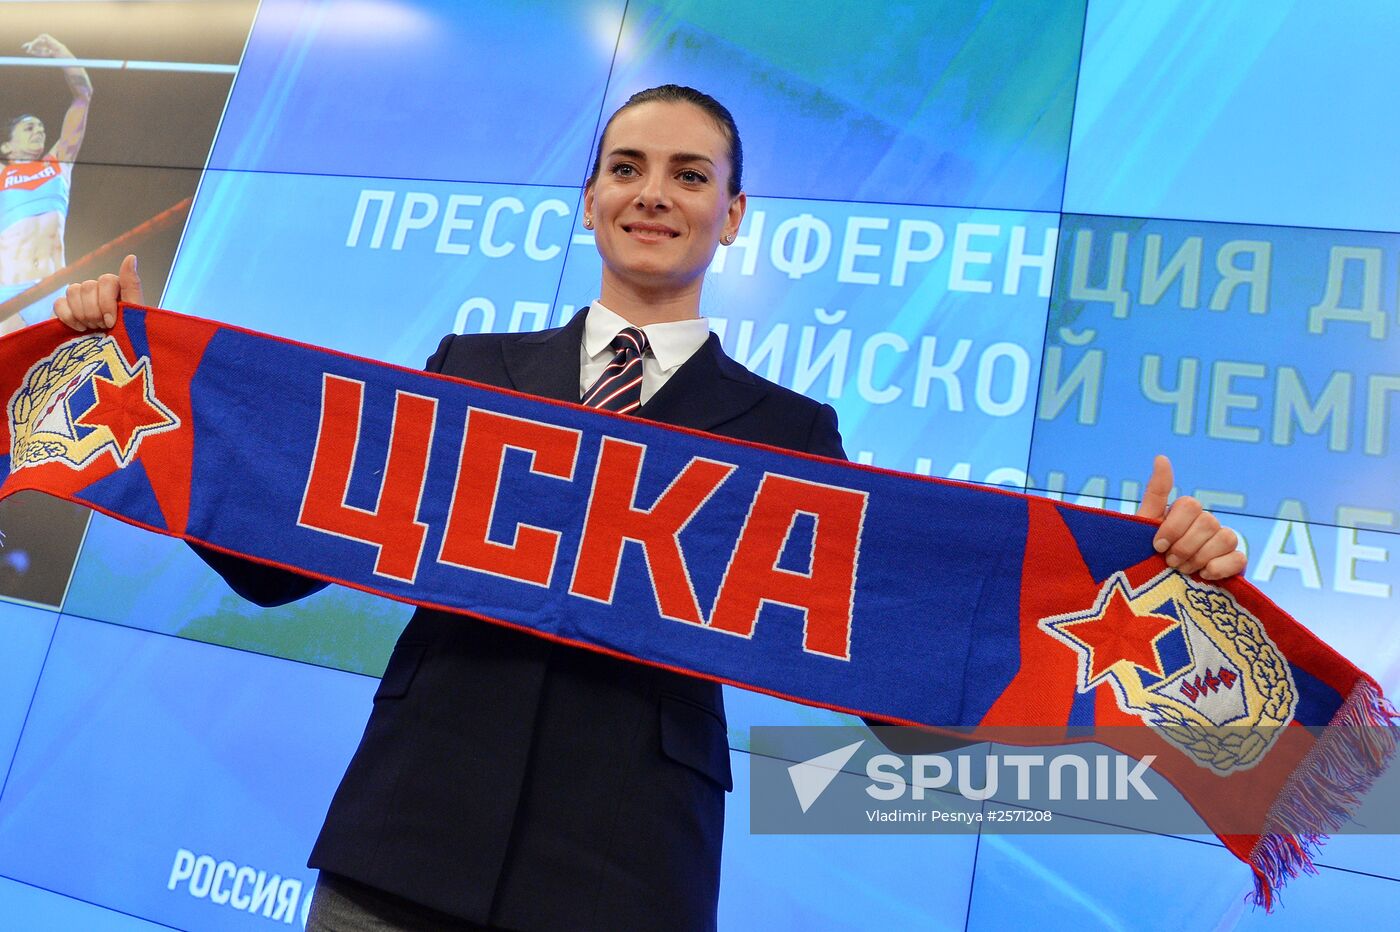 Yelena Isinbayeva returns to professional sports